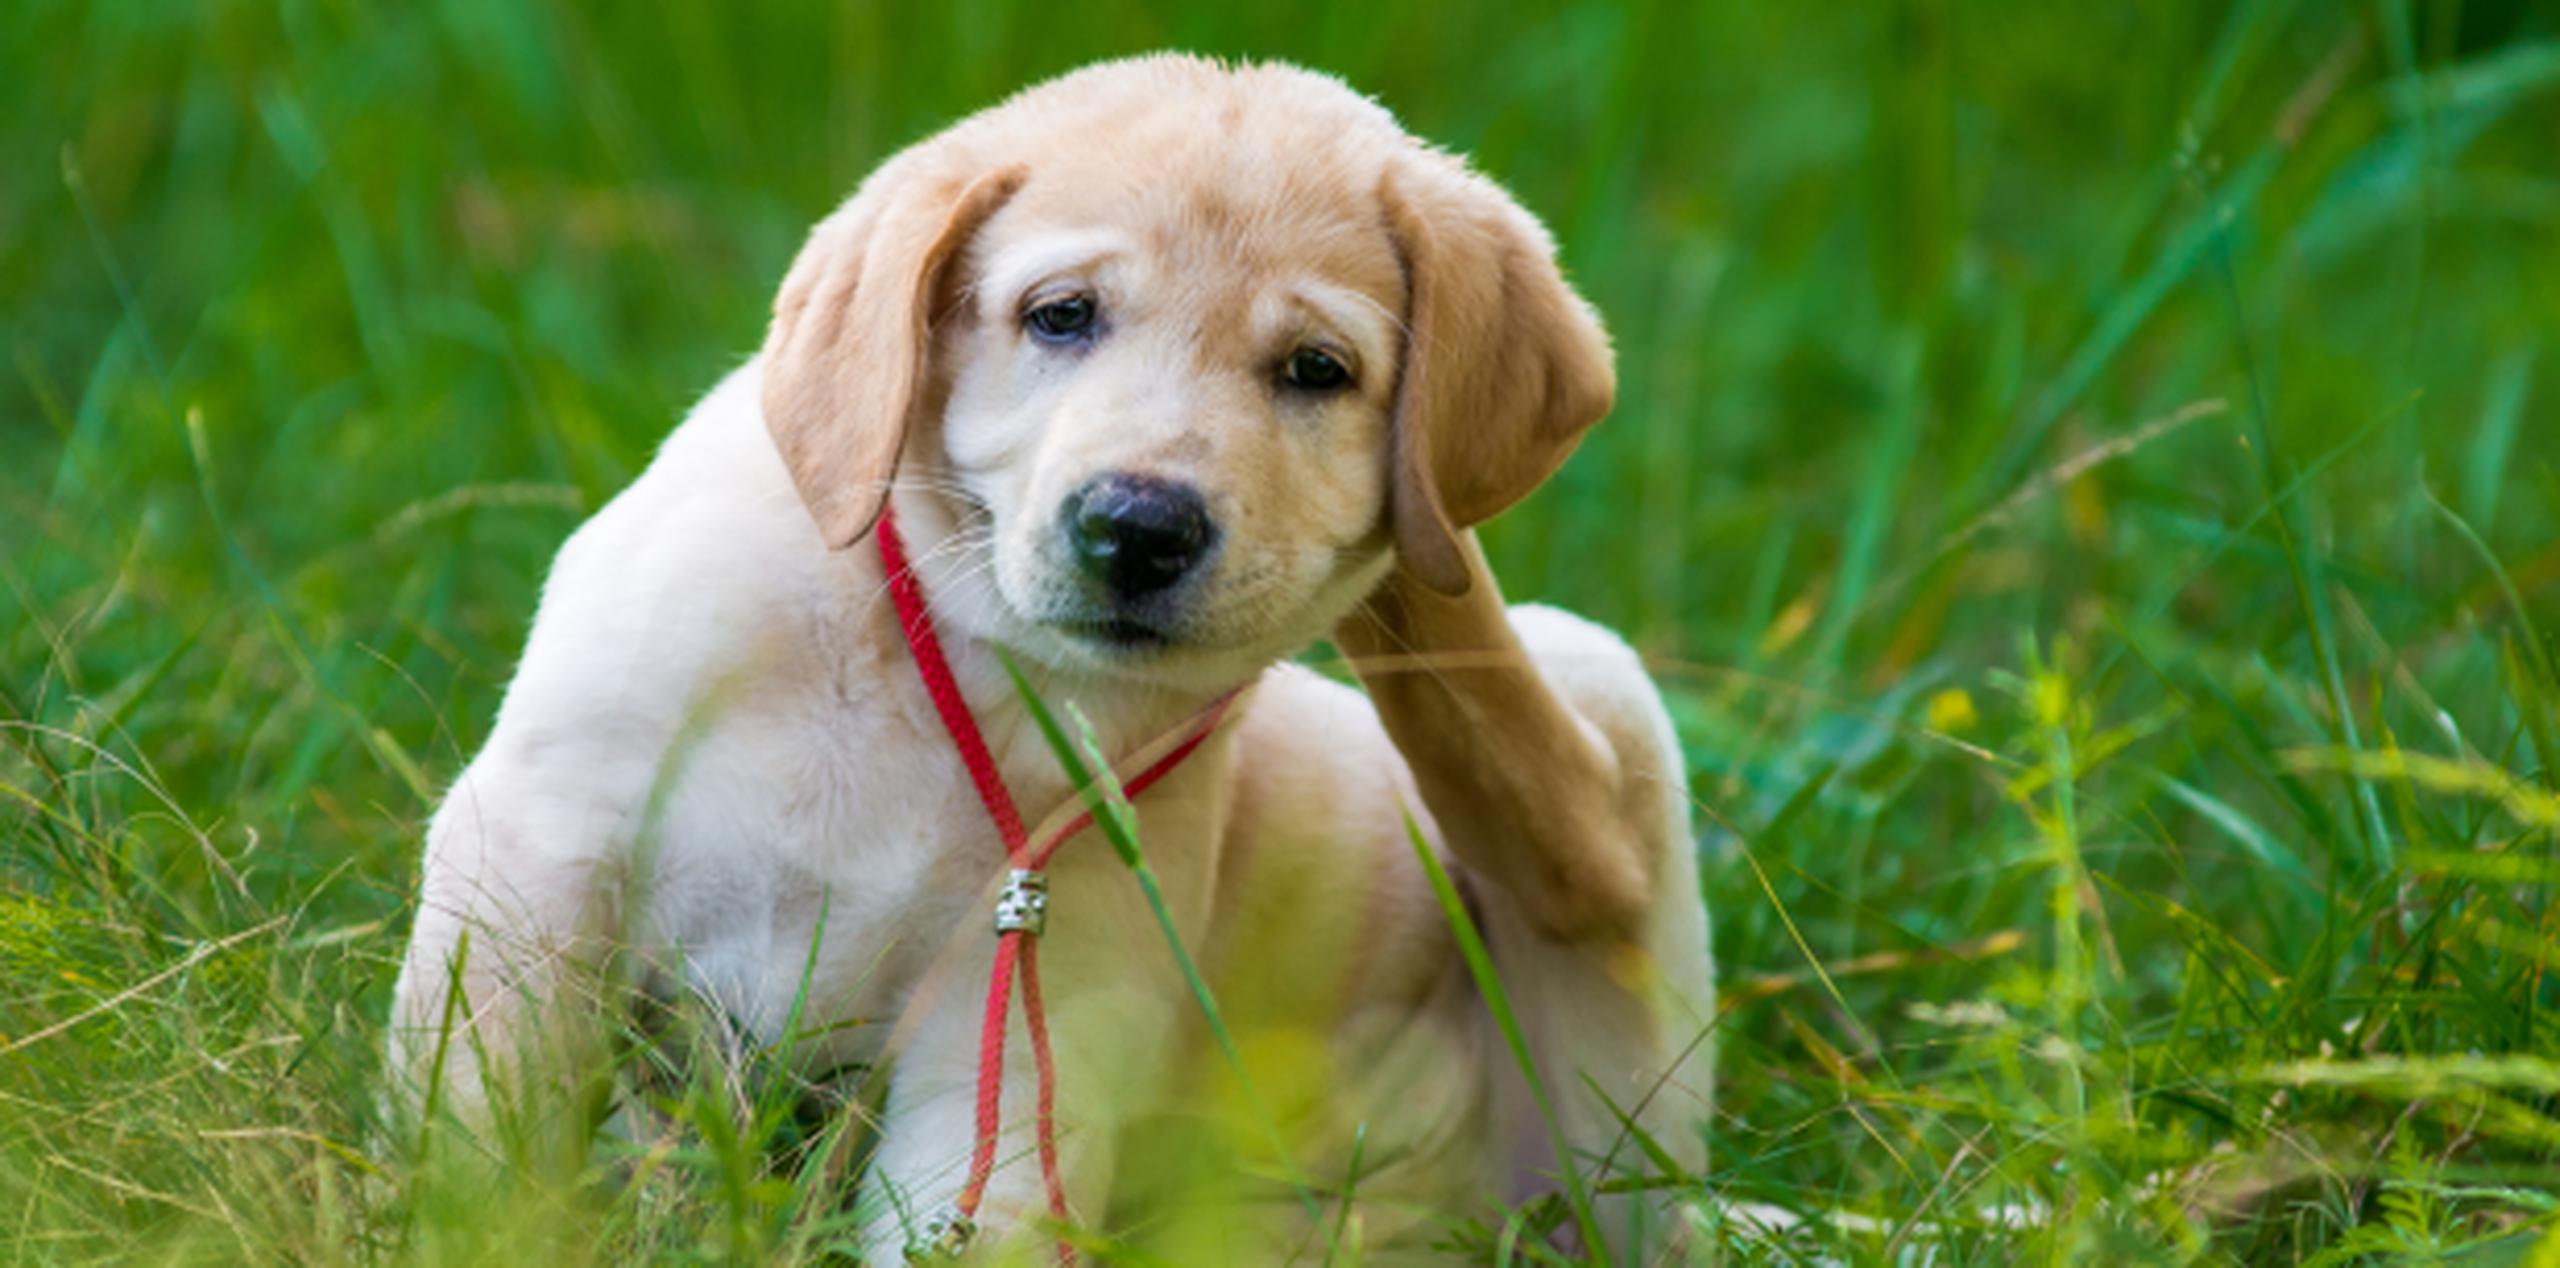 Las pulgas son una molestia para las mascotas y su dueño, pero también son una fuente de enfermedades. (Shutterstock)